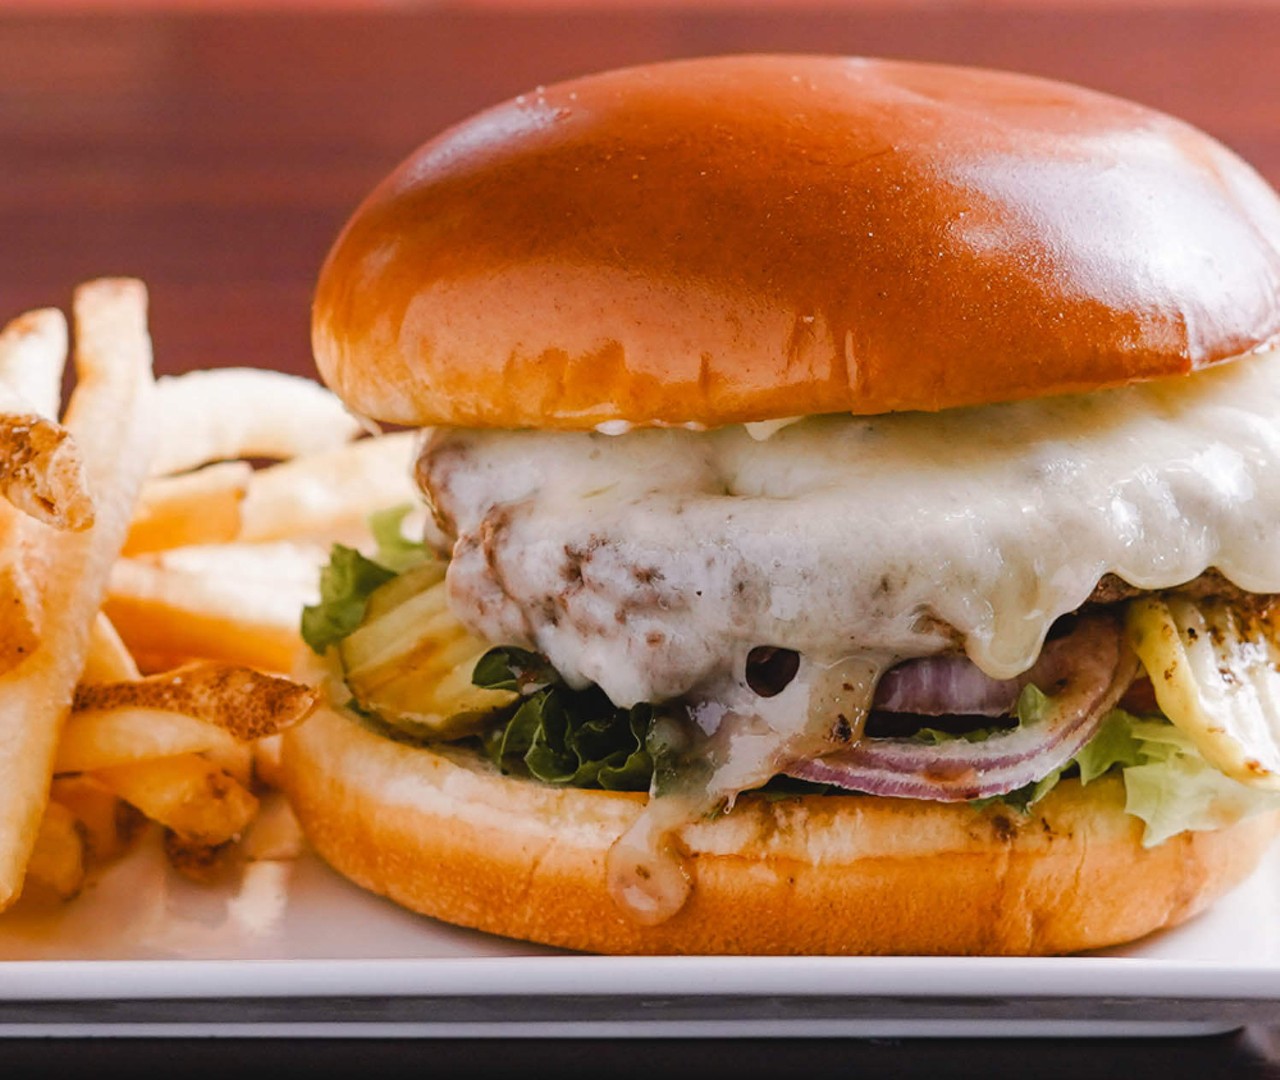 Burger Week Brings Juicy 8 Burgers to St. Louis All Week [PHOTOS] St